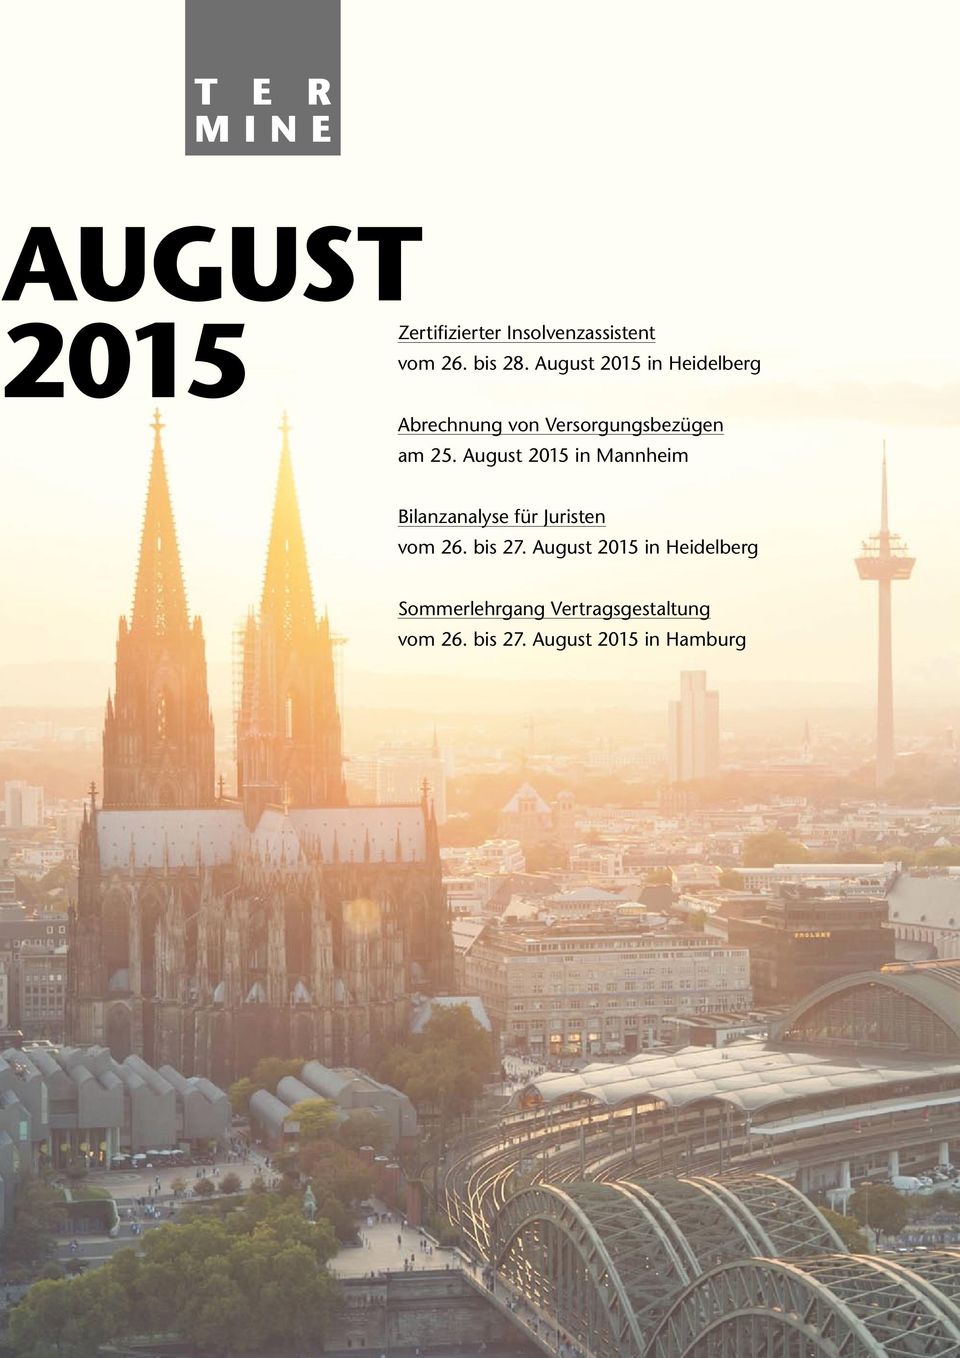 August 2015 in Mannheim Bilanzanalyse für Juristen vom 26. bis 27.